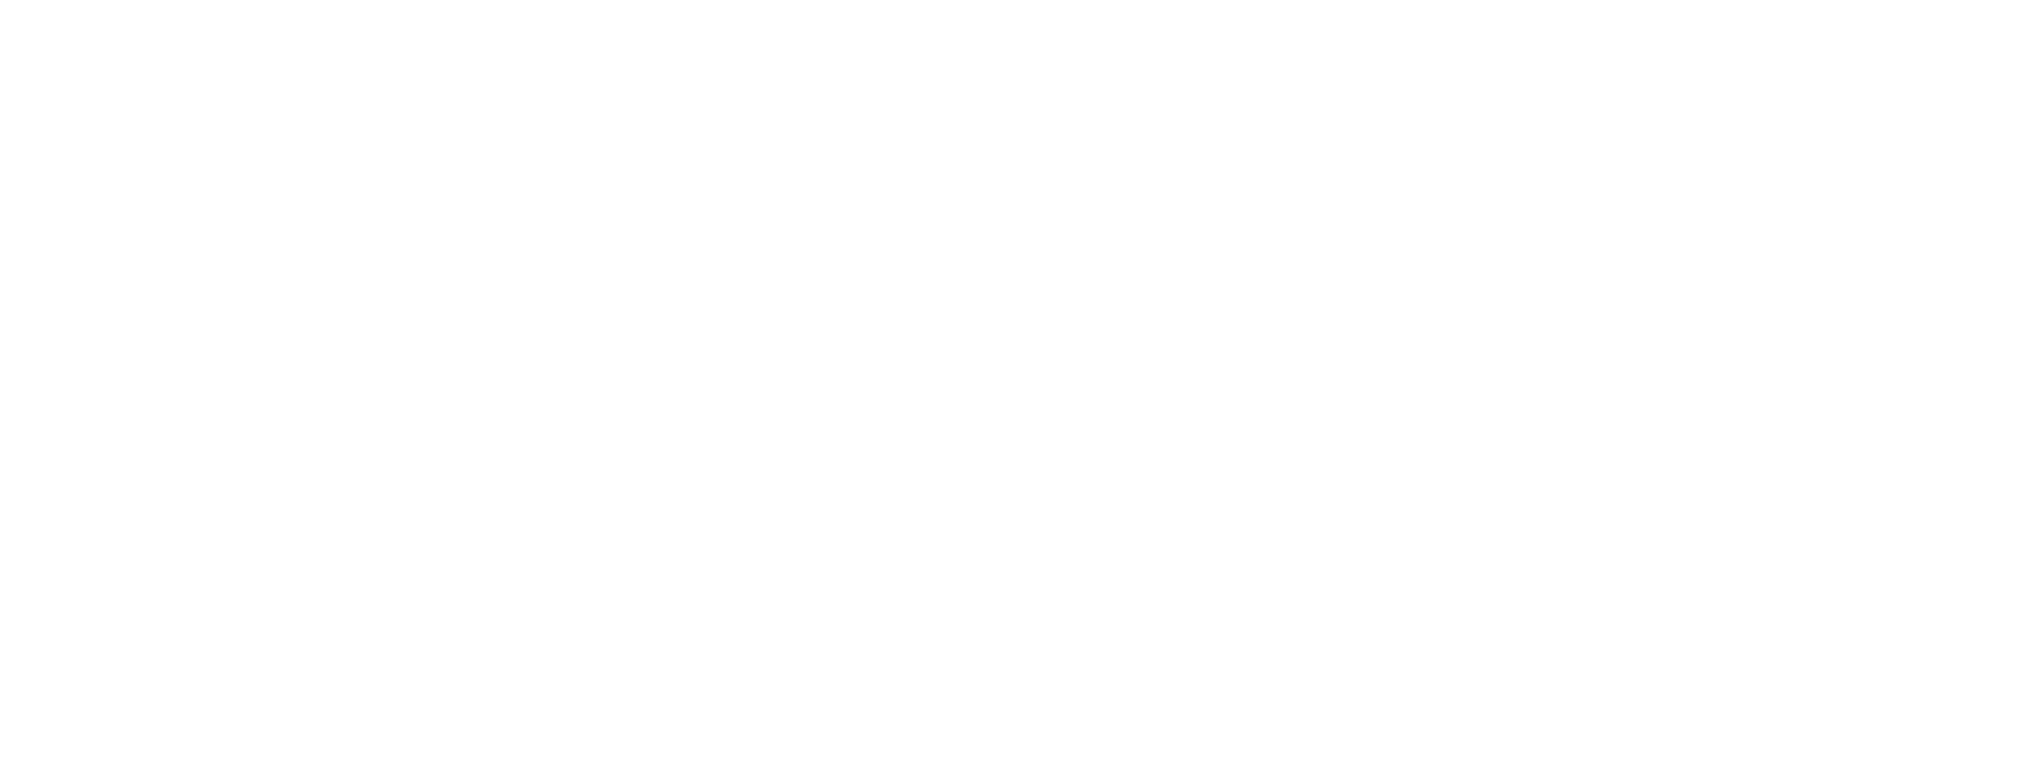 bloc-transport